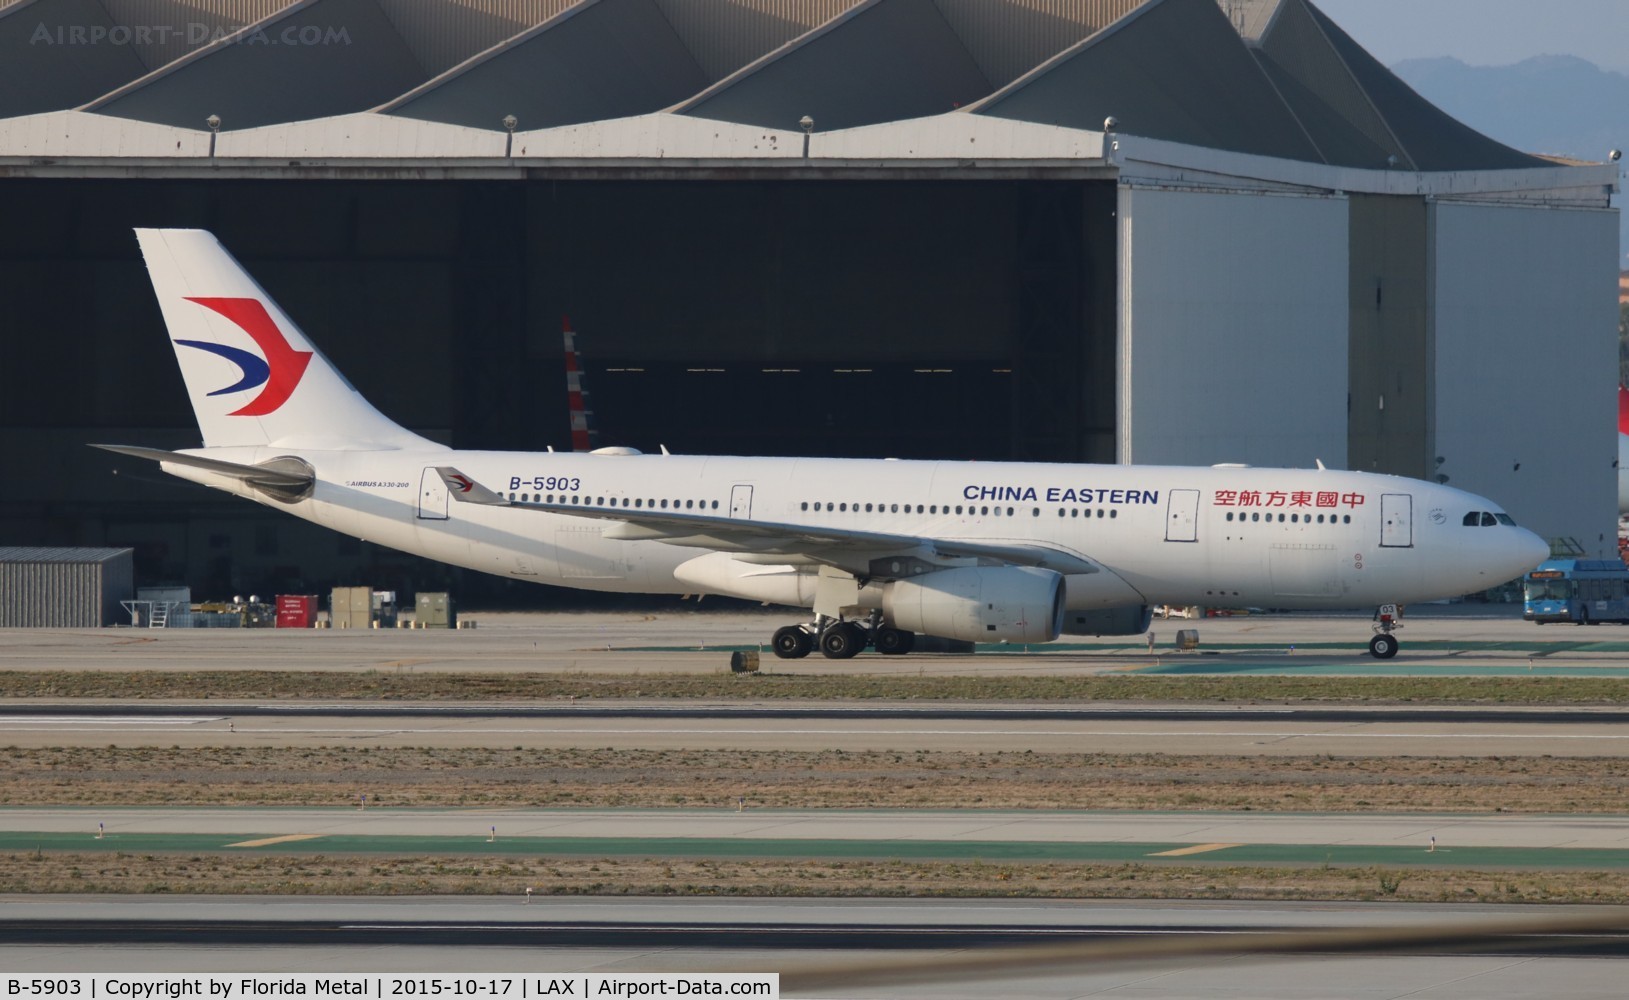 B-5903, 2012 Airbus A330-243 C/N 1331, China Eastern